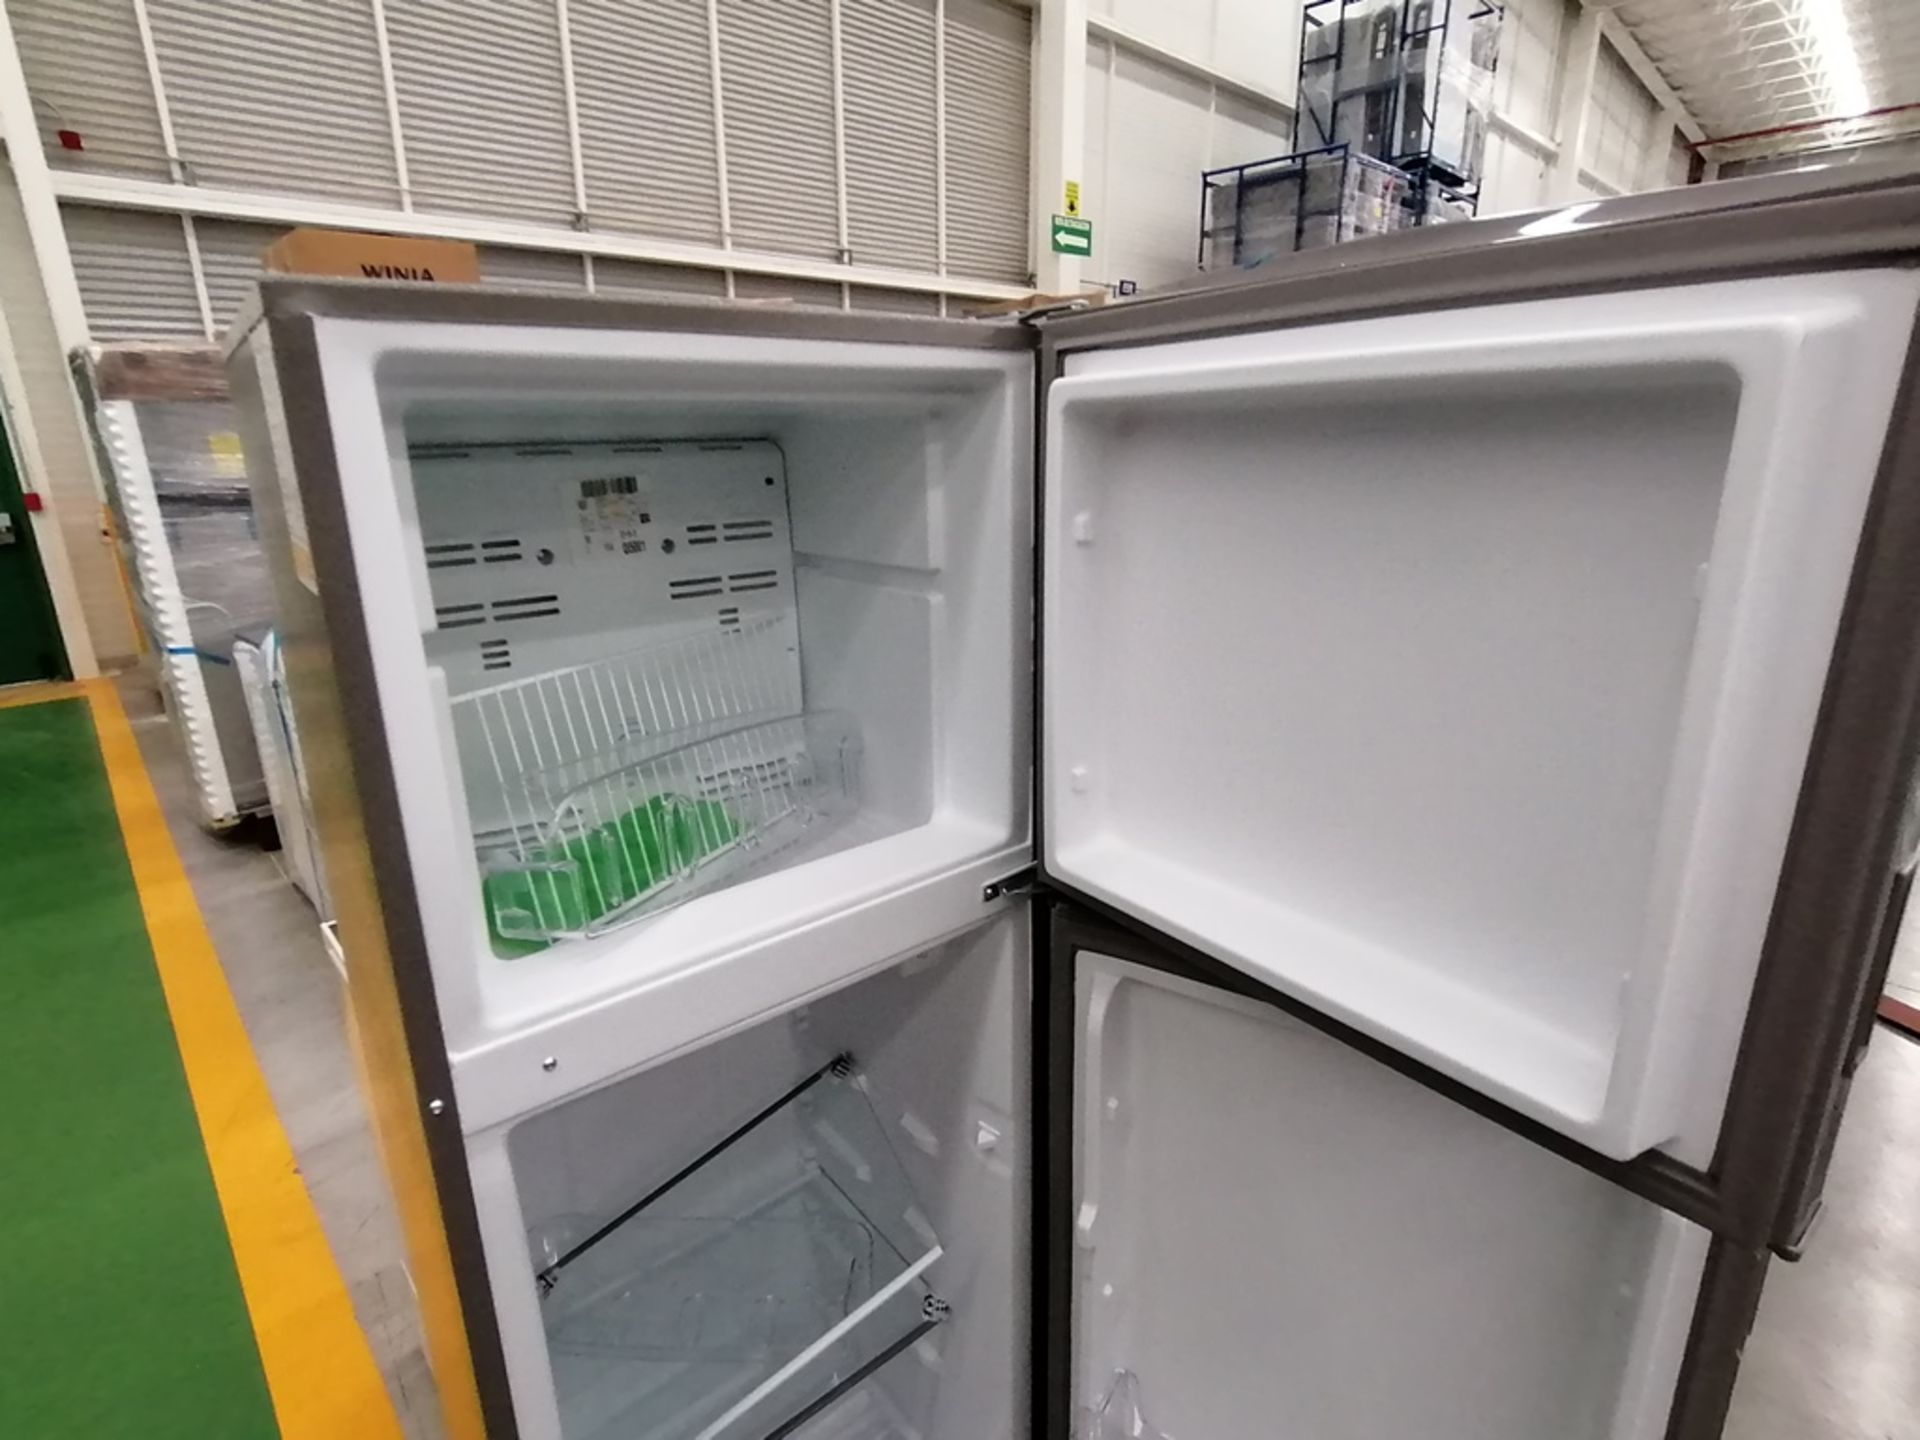 Lote de 2 refrigeradores incluye: 1 Refrigerador, Marca Acros, Modelo AT9007G, Serie VRA4332547, Co - Image 6 of 14